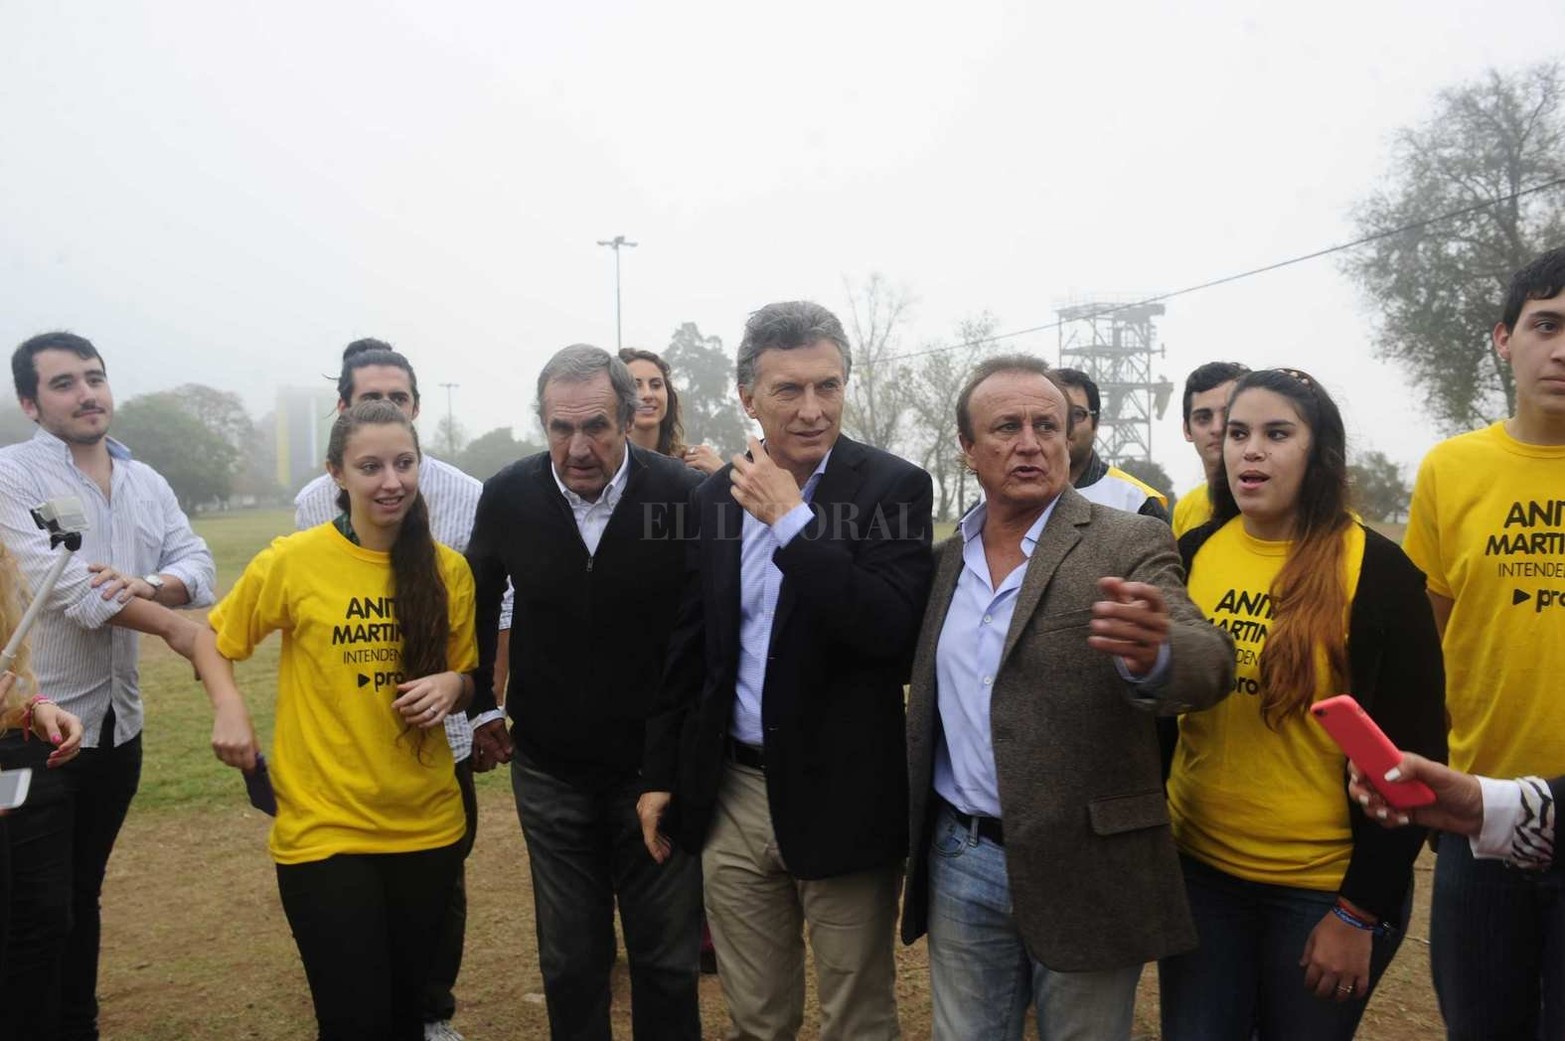 5 de junio de 2015. Mauricio Macri anuncia en Rosario que Reutemann será su candidato a senador nacional por Santa Fe para las elecciones de ese año.